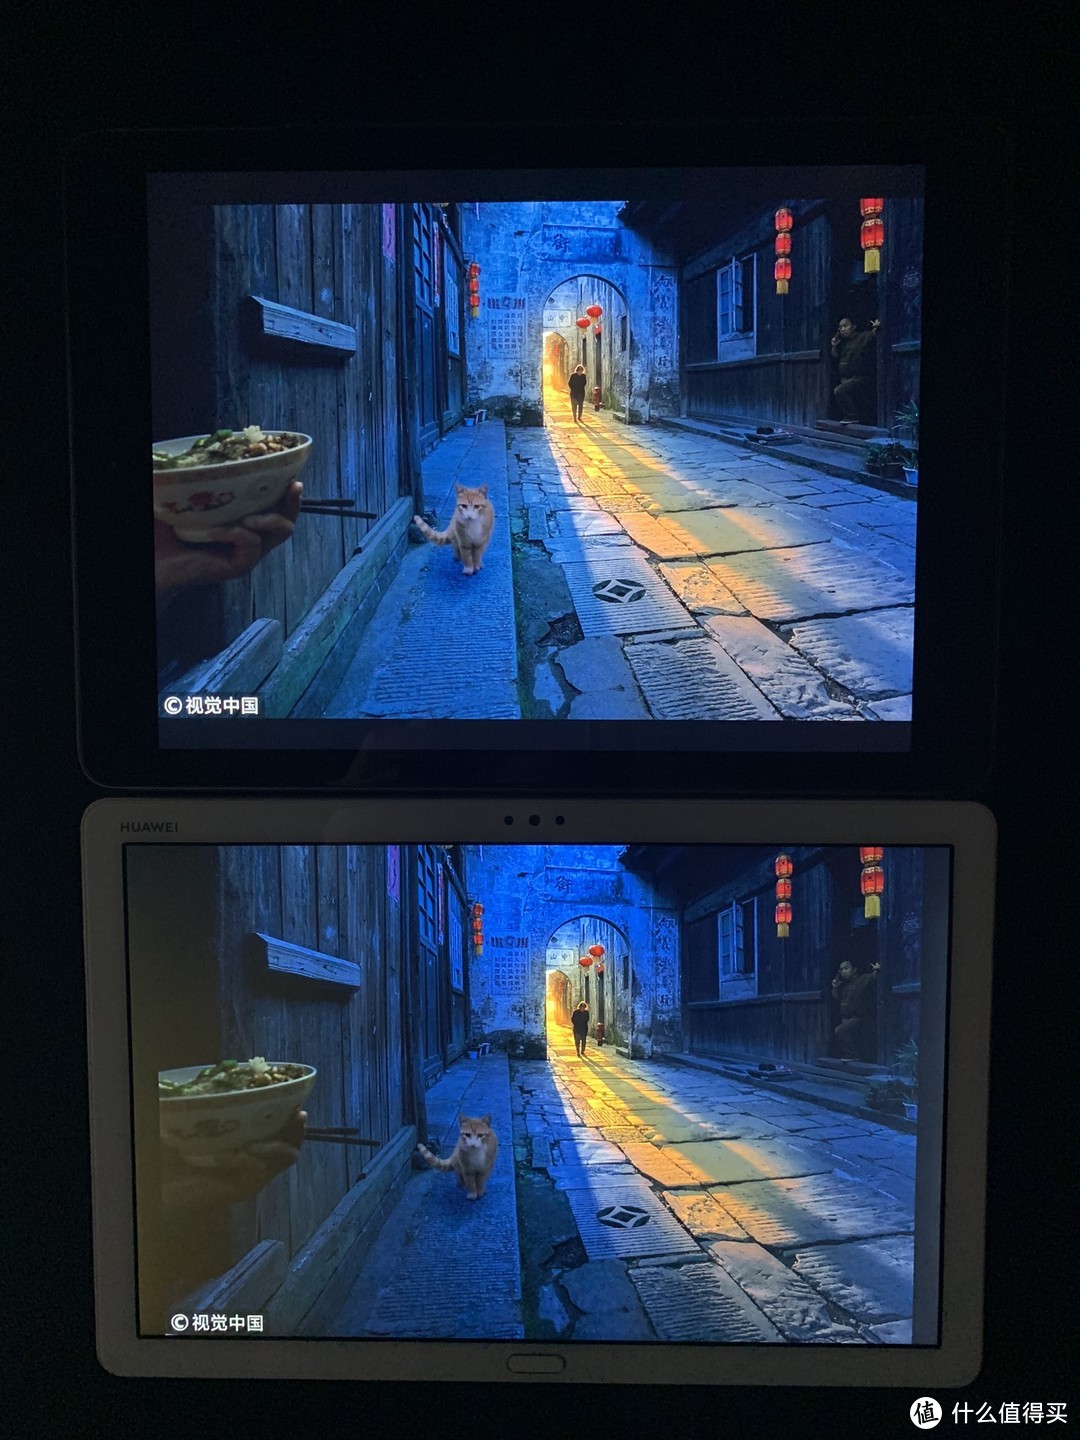 “智能居家”平板电脑： 华为平板 M5青春版 使用评测及兼对比iPad（2018）